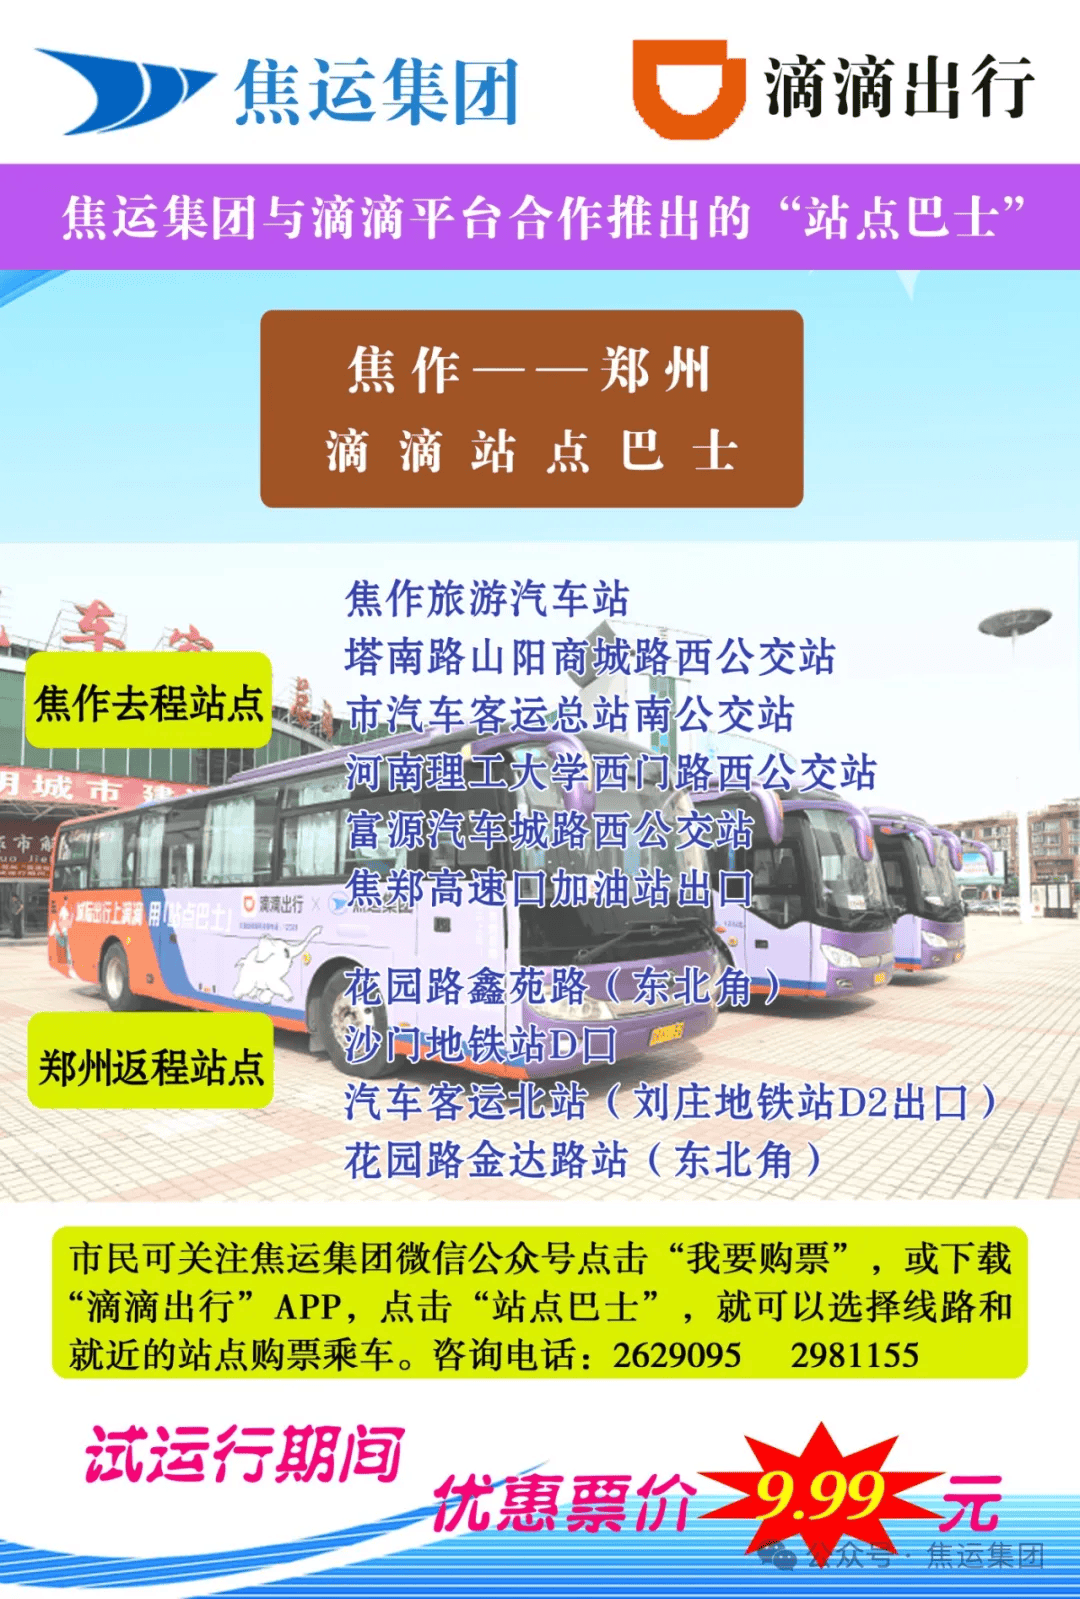 焦作至郑州滴滴站点巴士开通运营近一个月来,线上选点,就近乘车